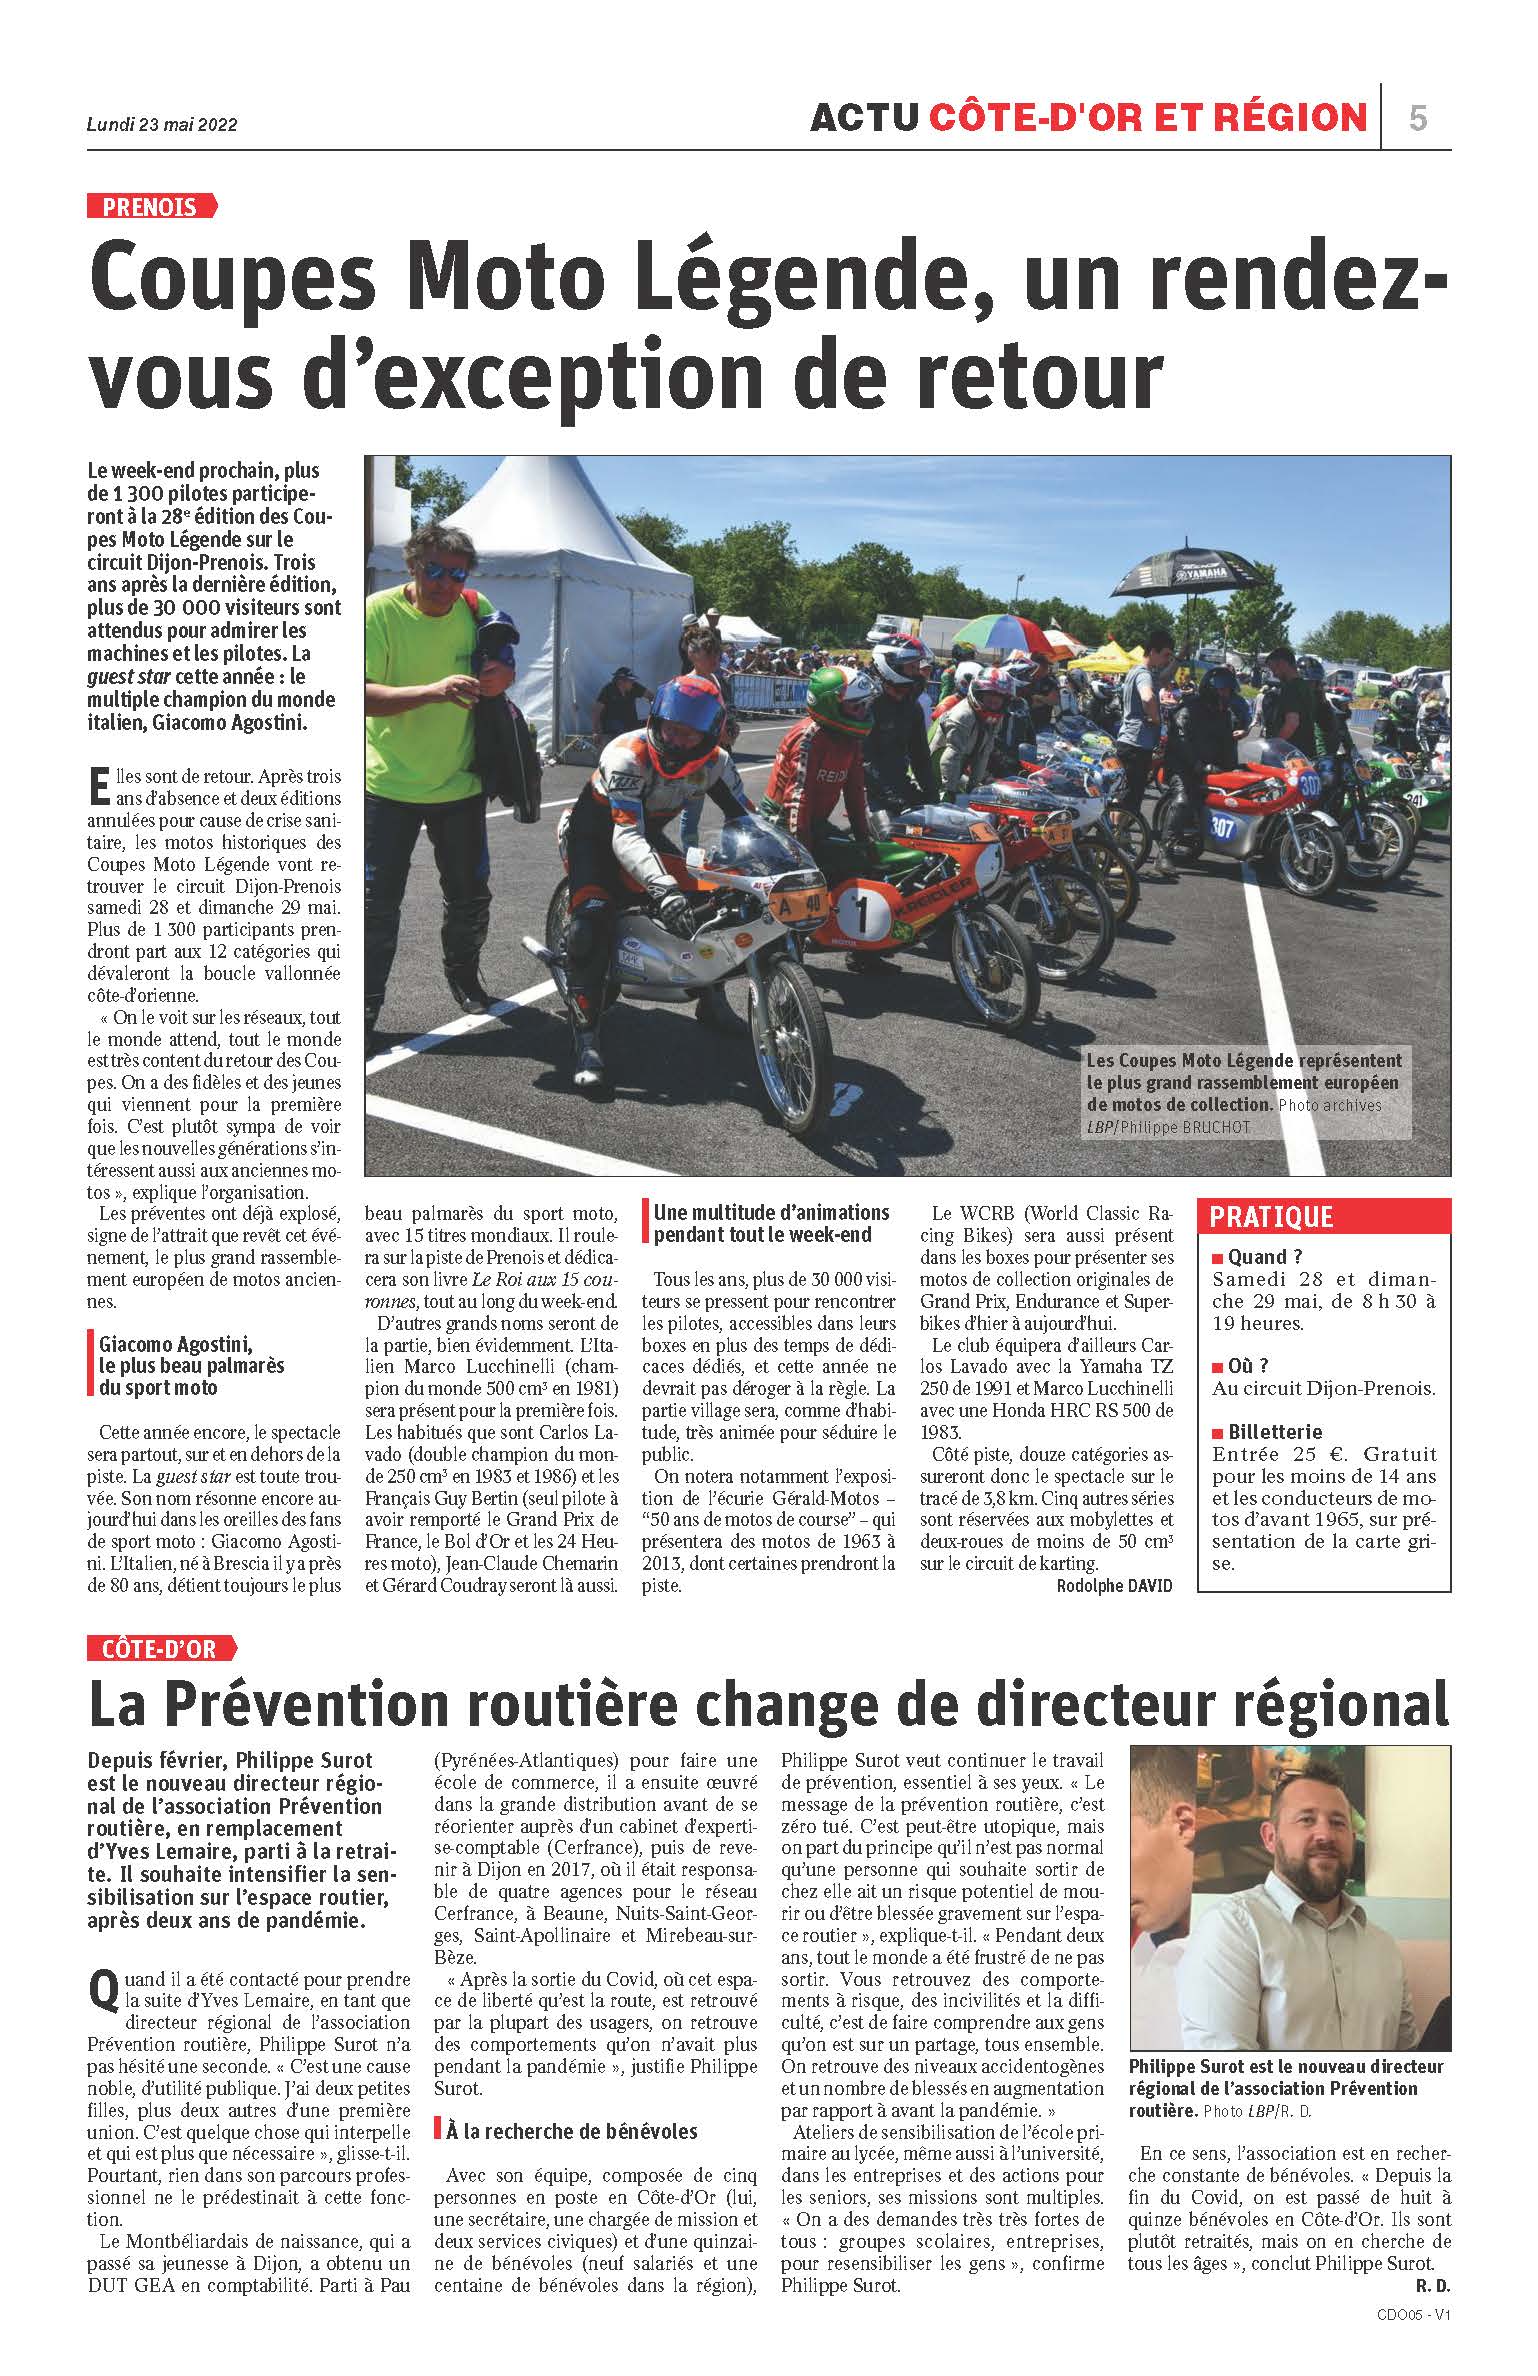 Les Coupes Moto Légende dans la presse régionale